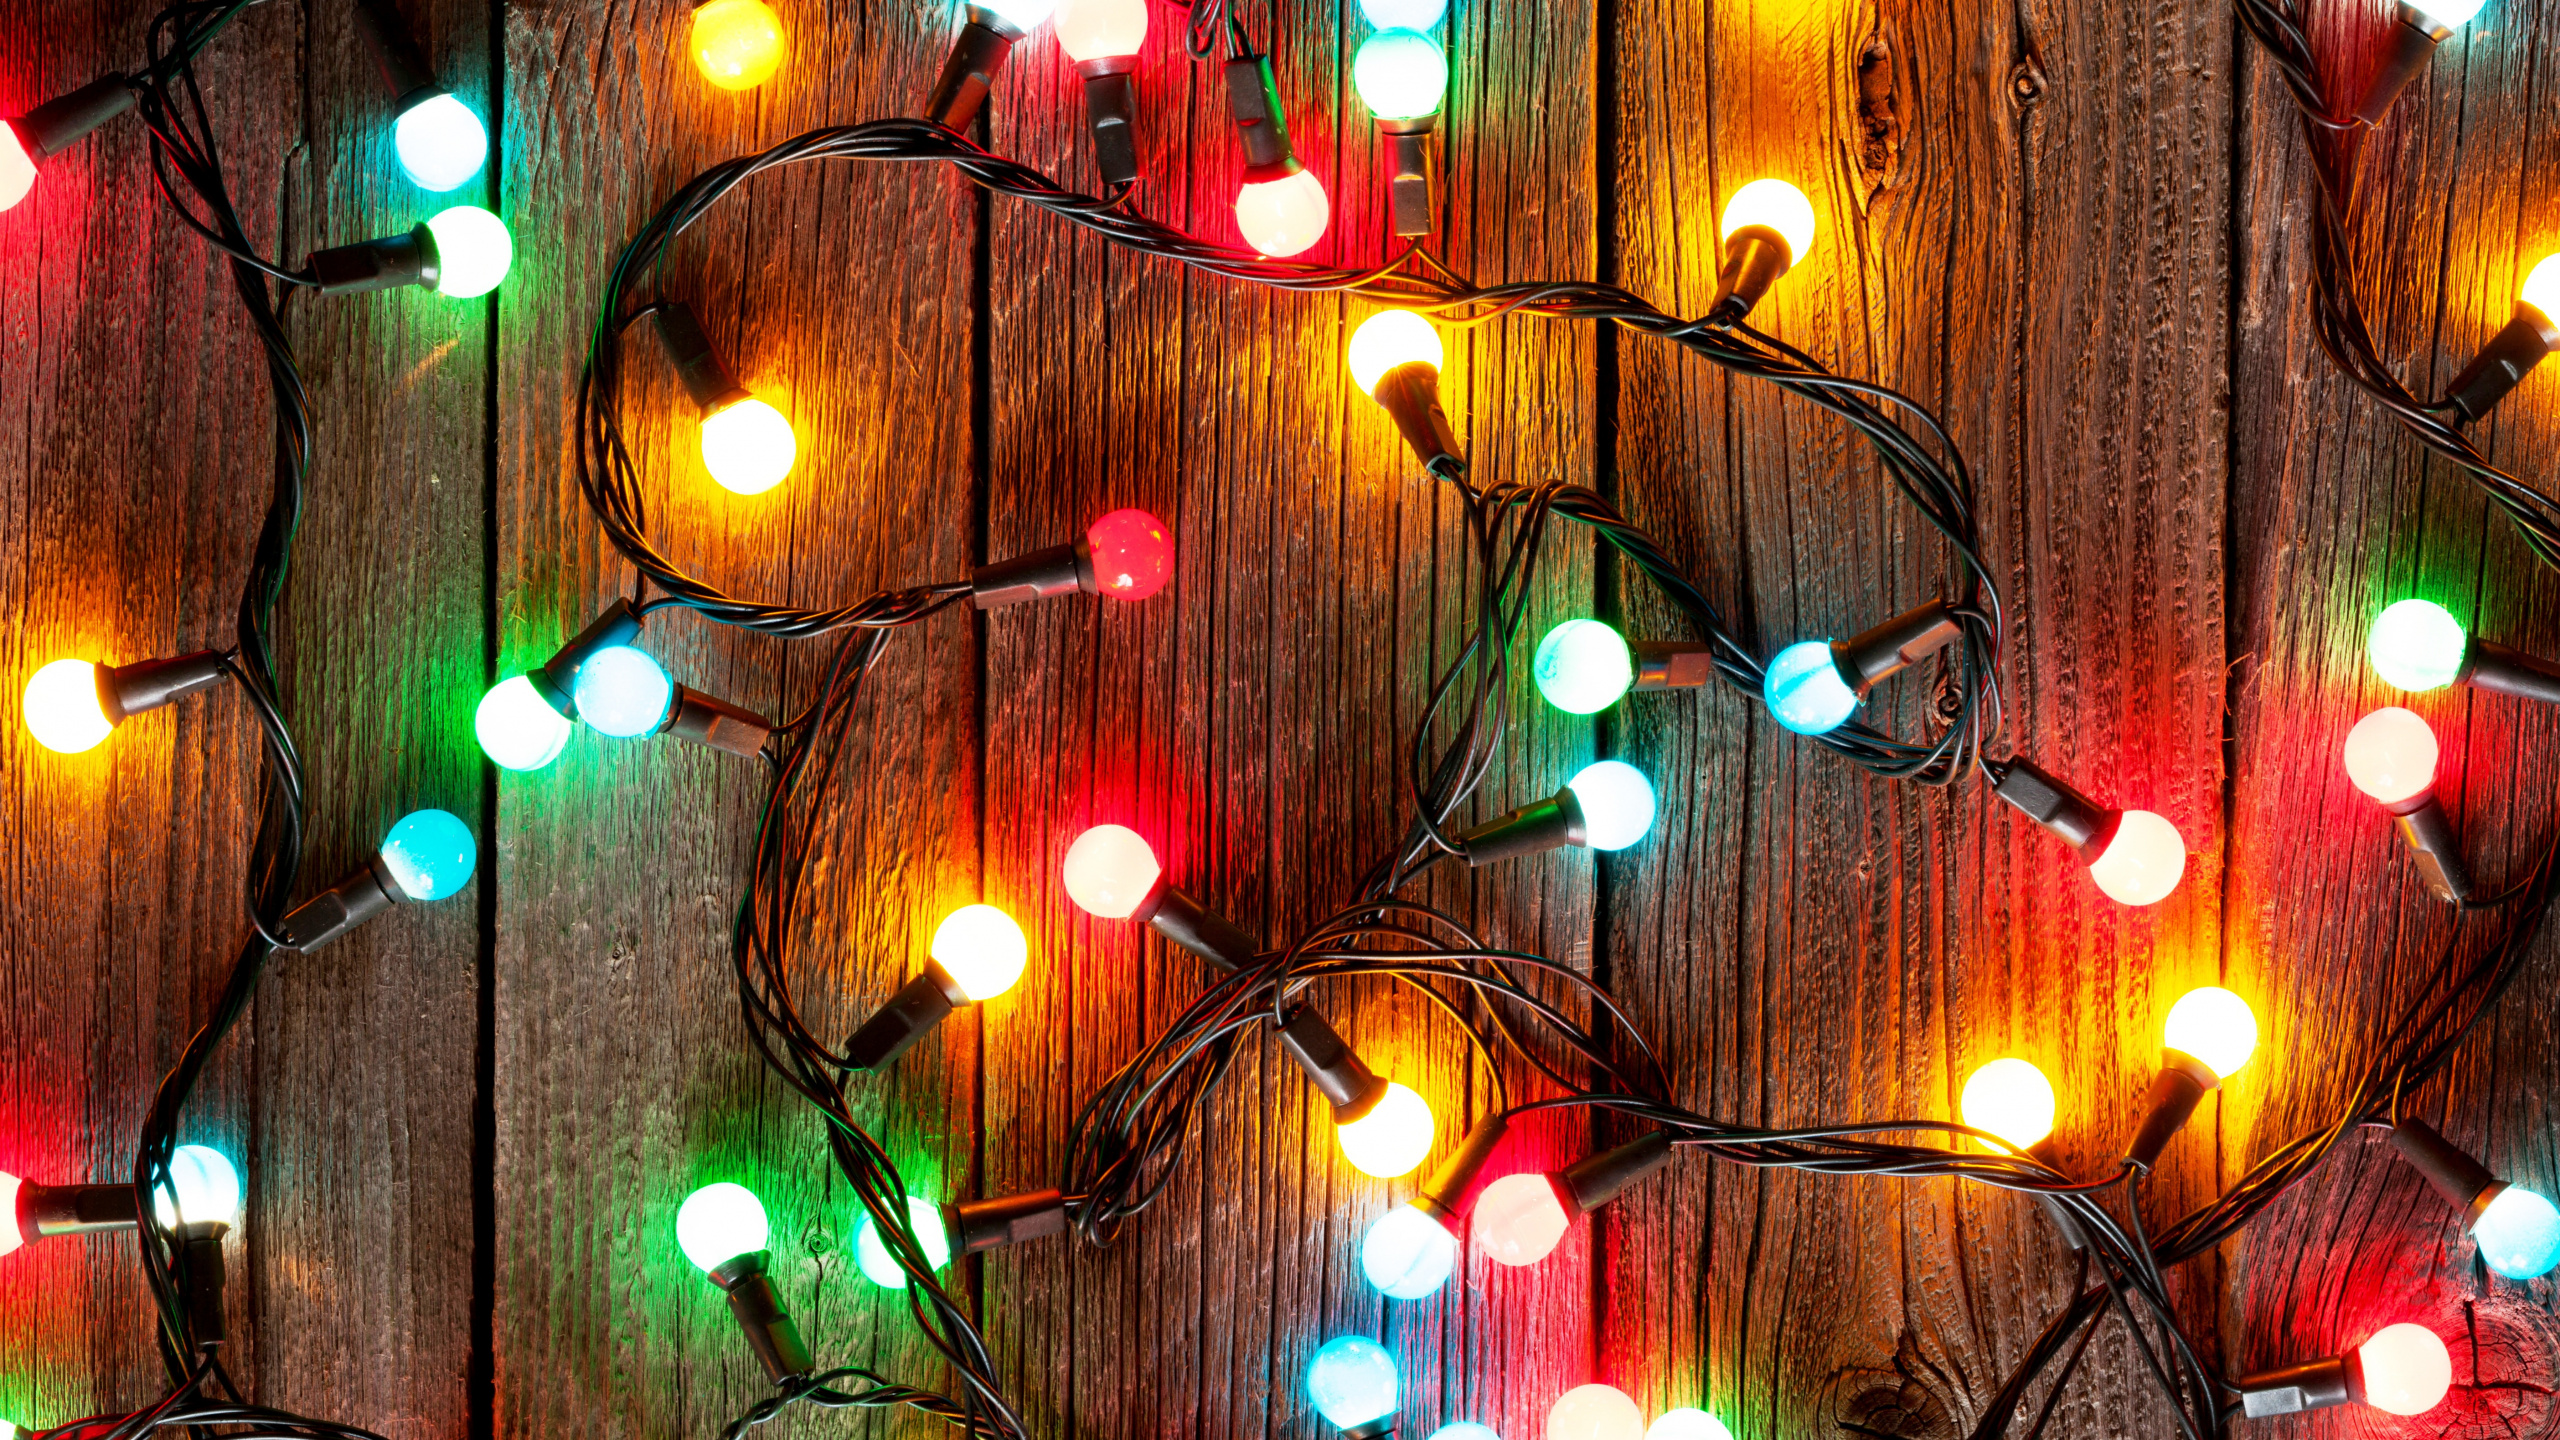 圣诞彩灯, 圣诞节那天, 假日, 圣诞节, 圣诞装饰 壁纸 2560x1440 允许